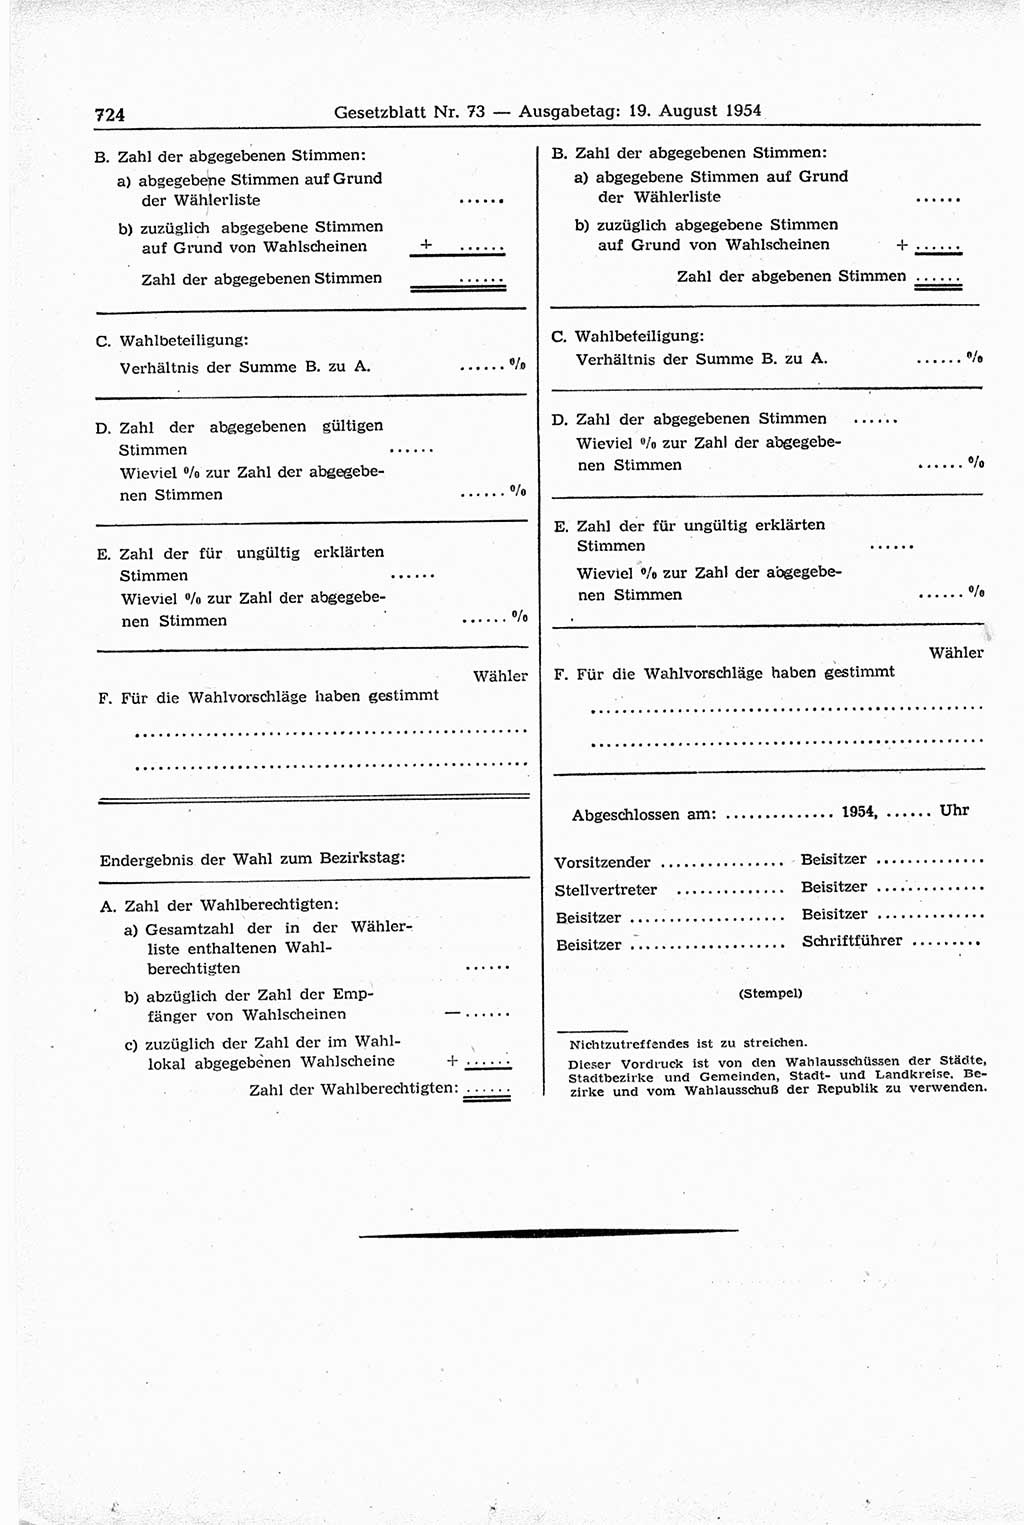 Gesetzblatt (GBl.) der Deutschen Demokratischen Republik (DDR) 1954, Seite 724 (GBl. DDR 1954, S. 724)